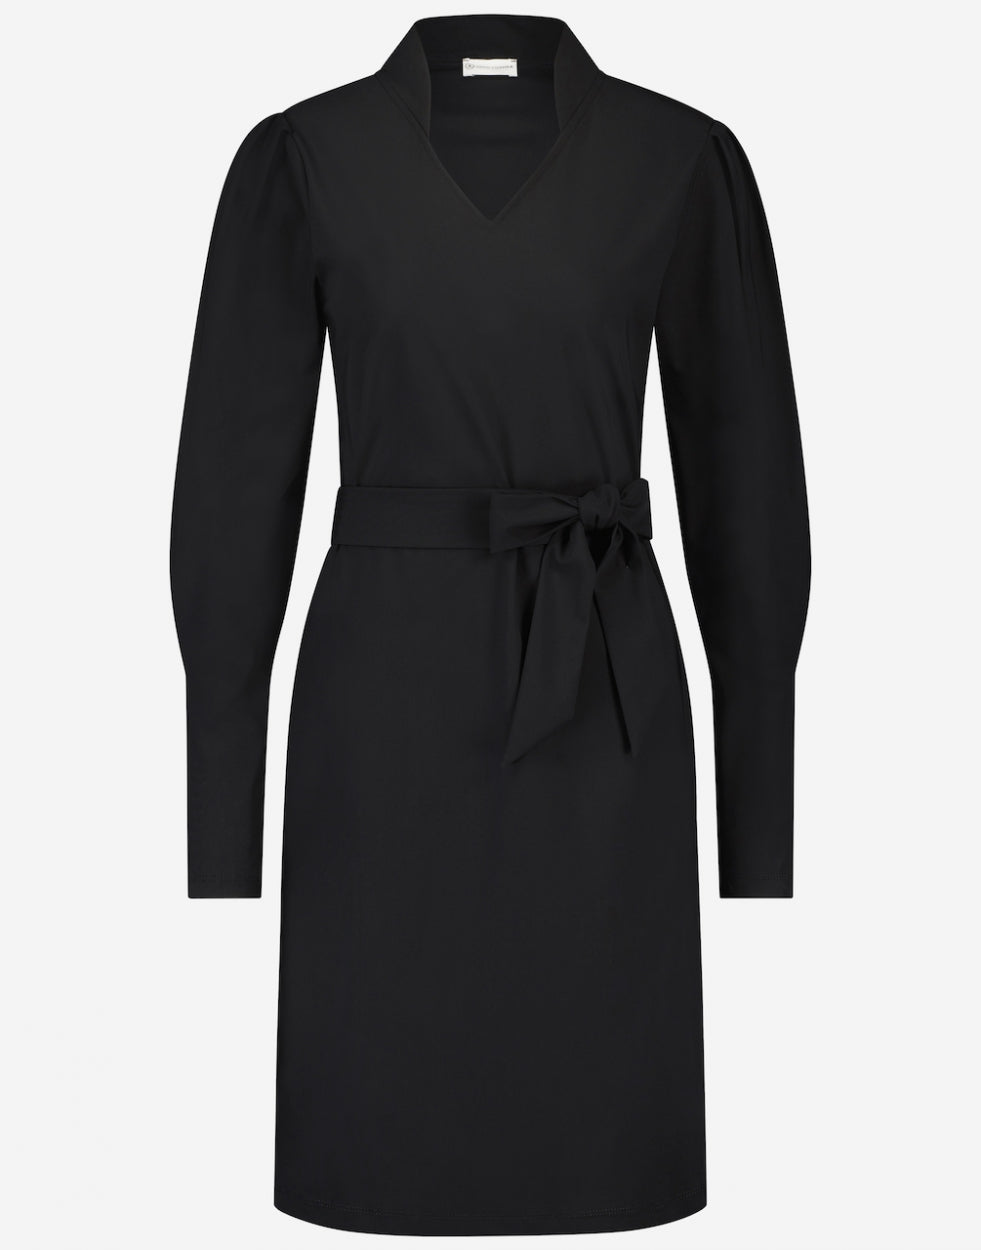 Dress Lies Technical Jersey | Black